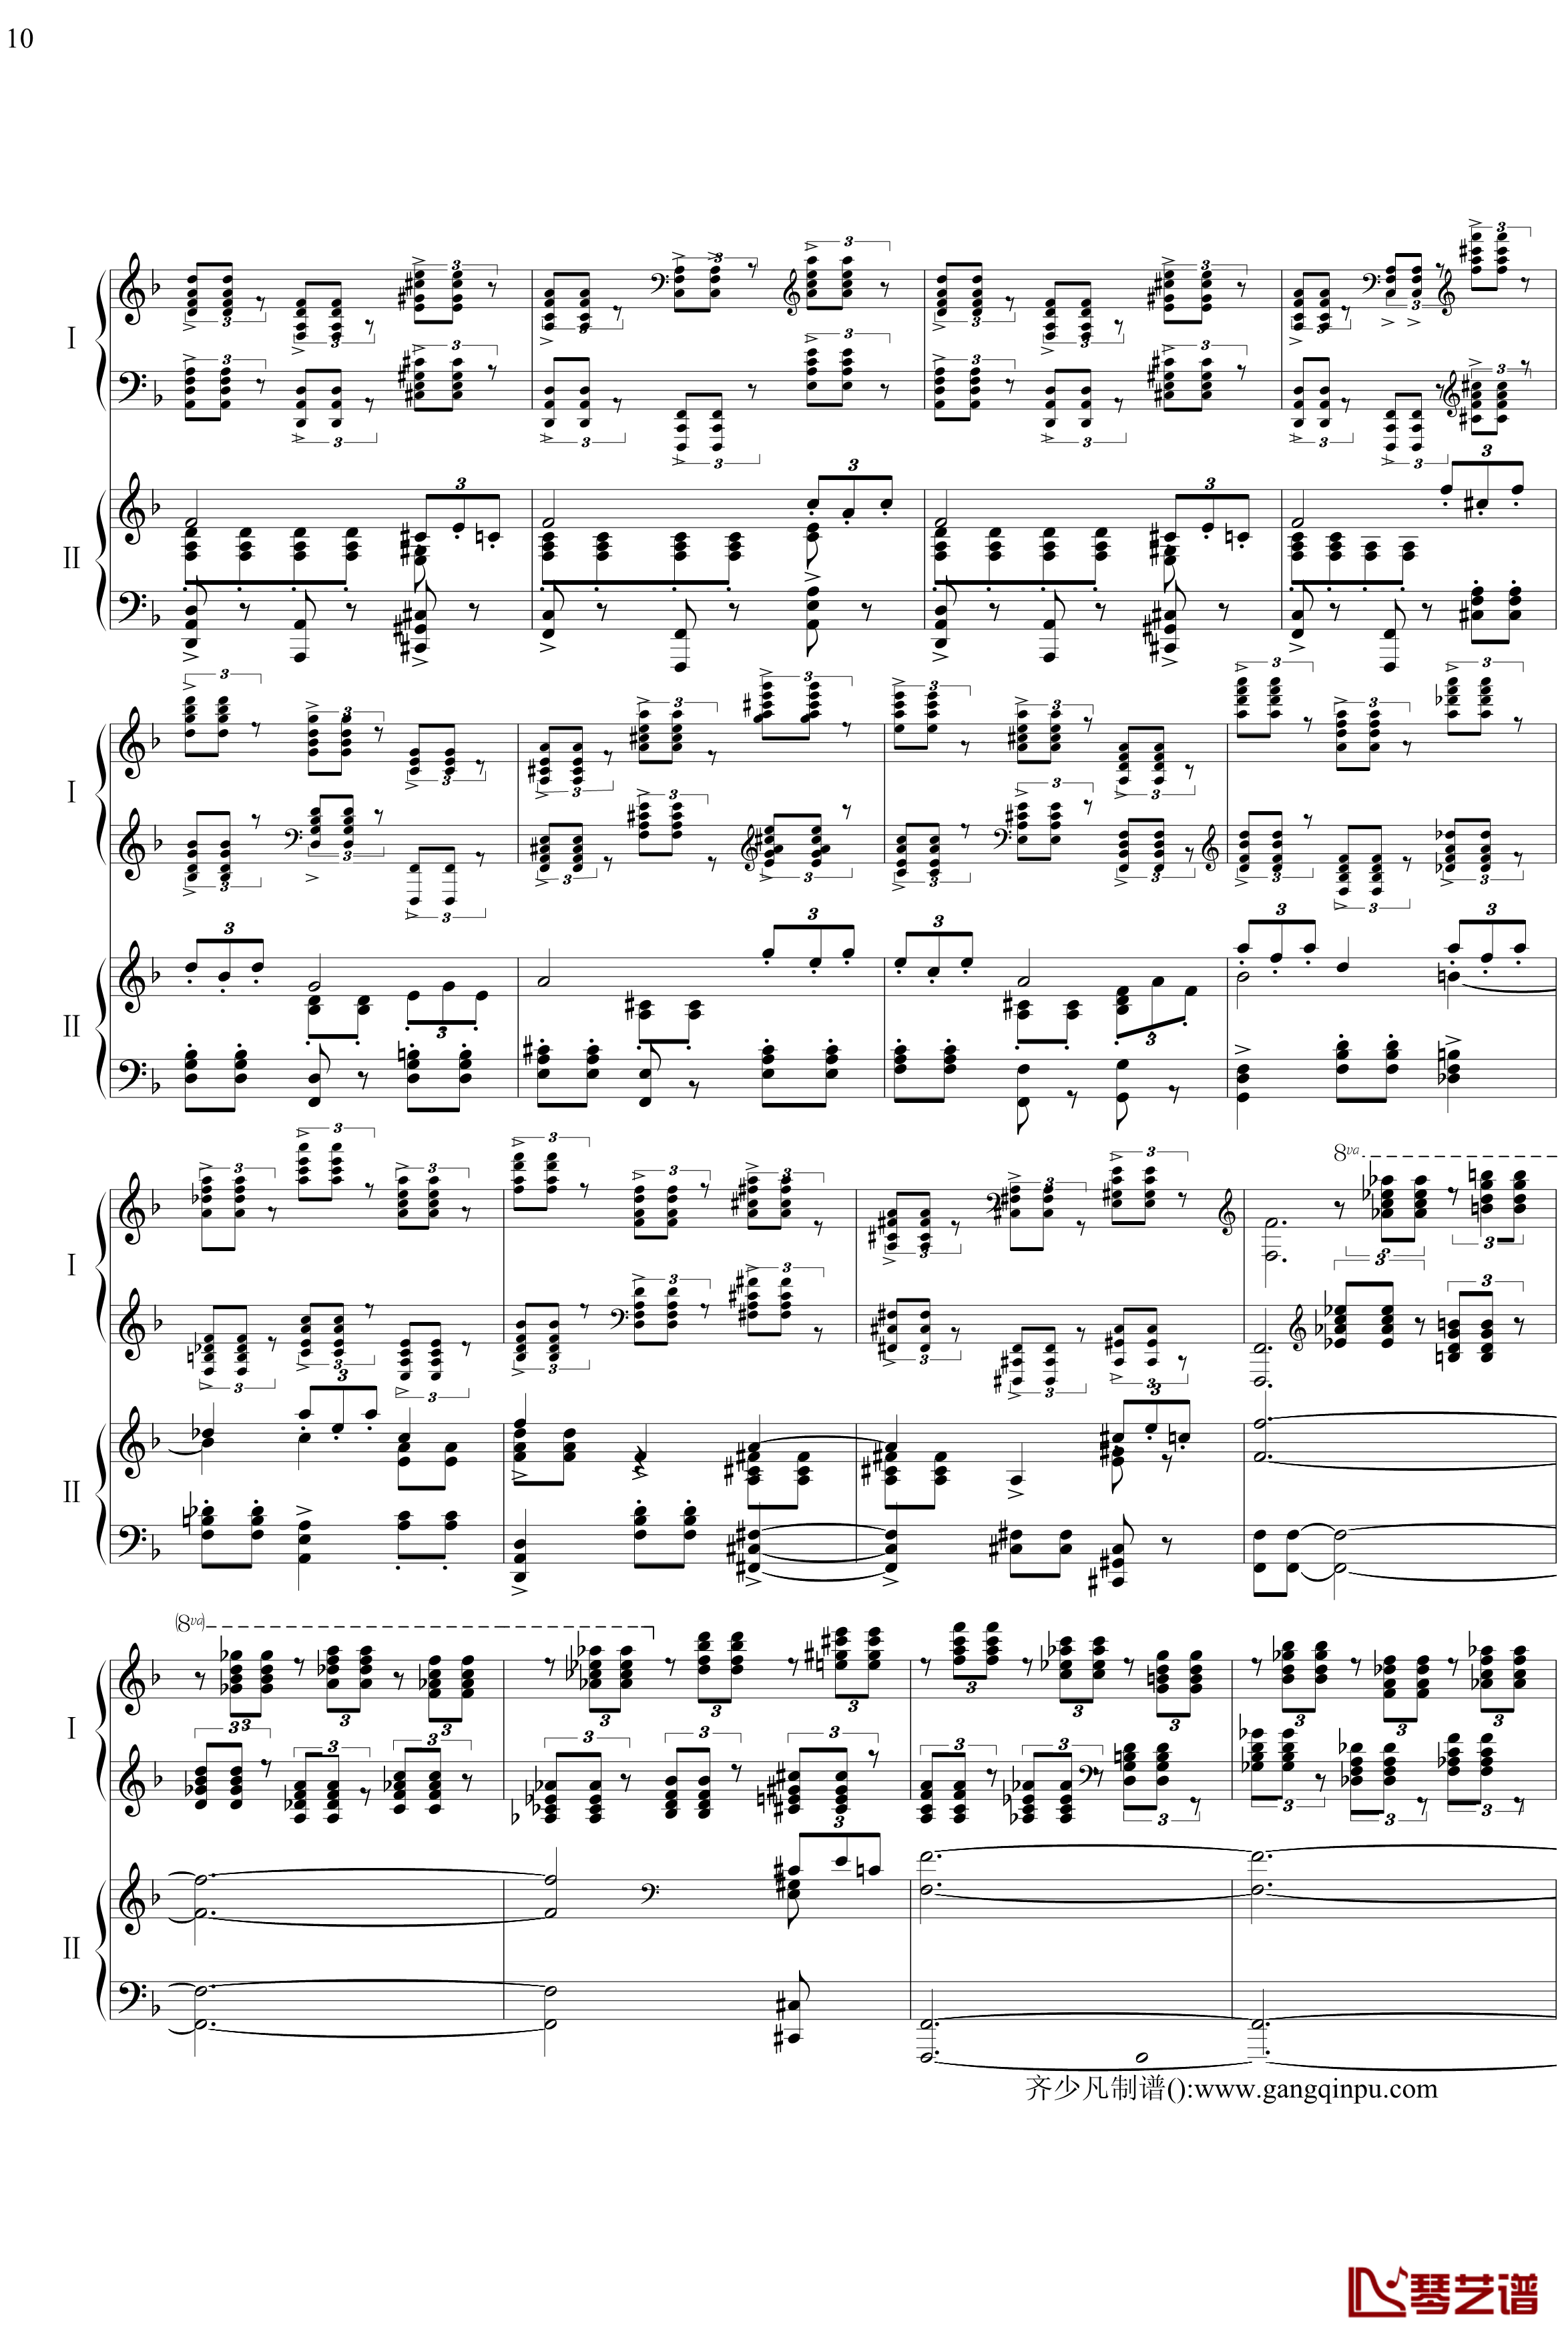 帕格尼尼主题狂想曲钢琴谱-11~18变奏-拉赫马尼若夫10